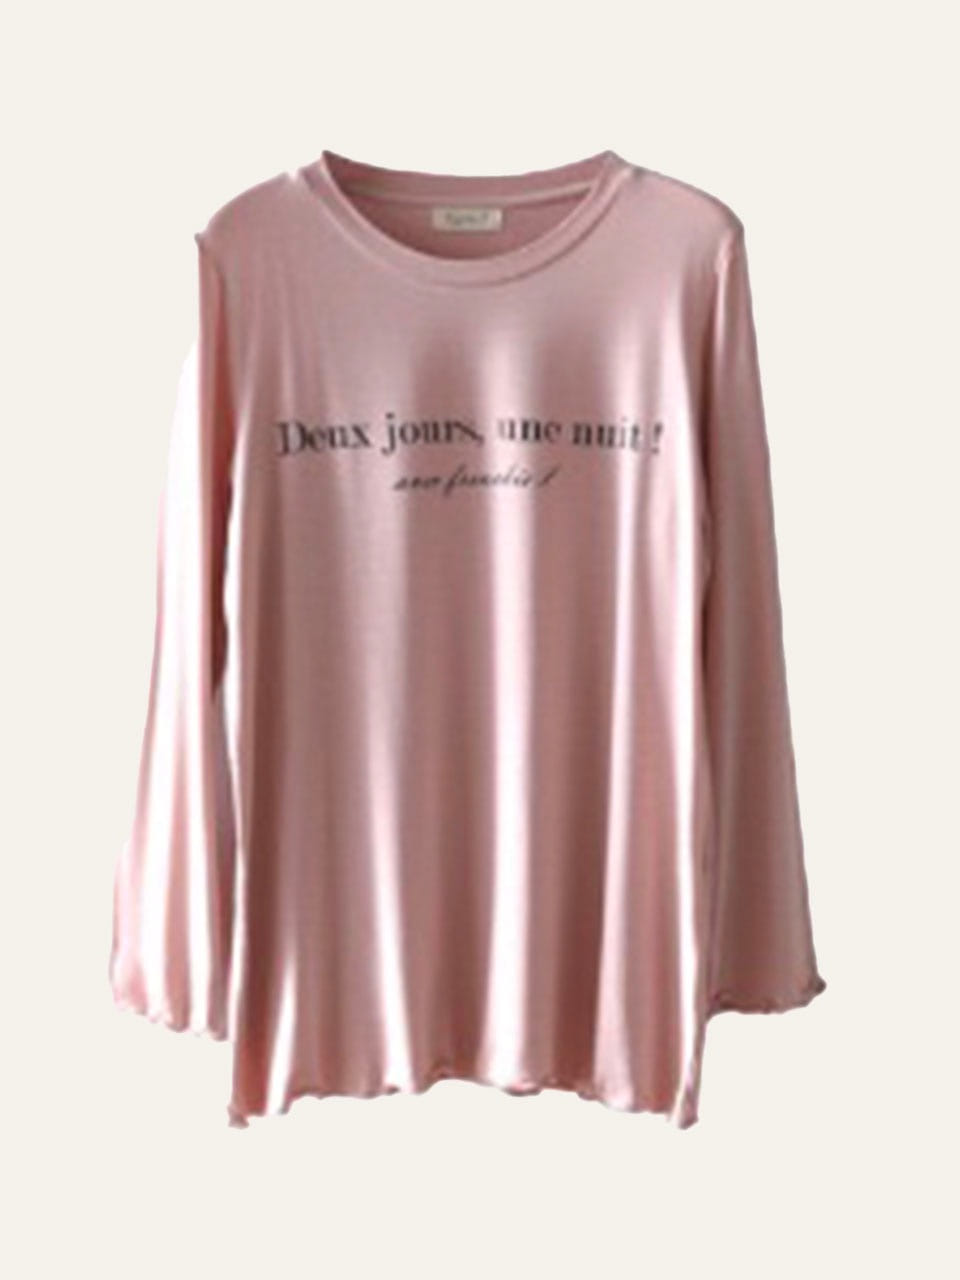 원포인트 모달 긴팔 티셔츠 - Pale pink